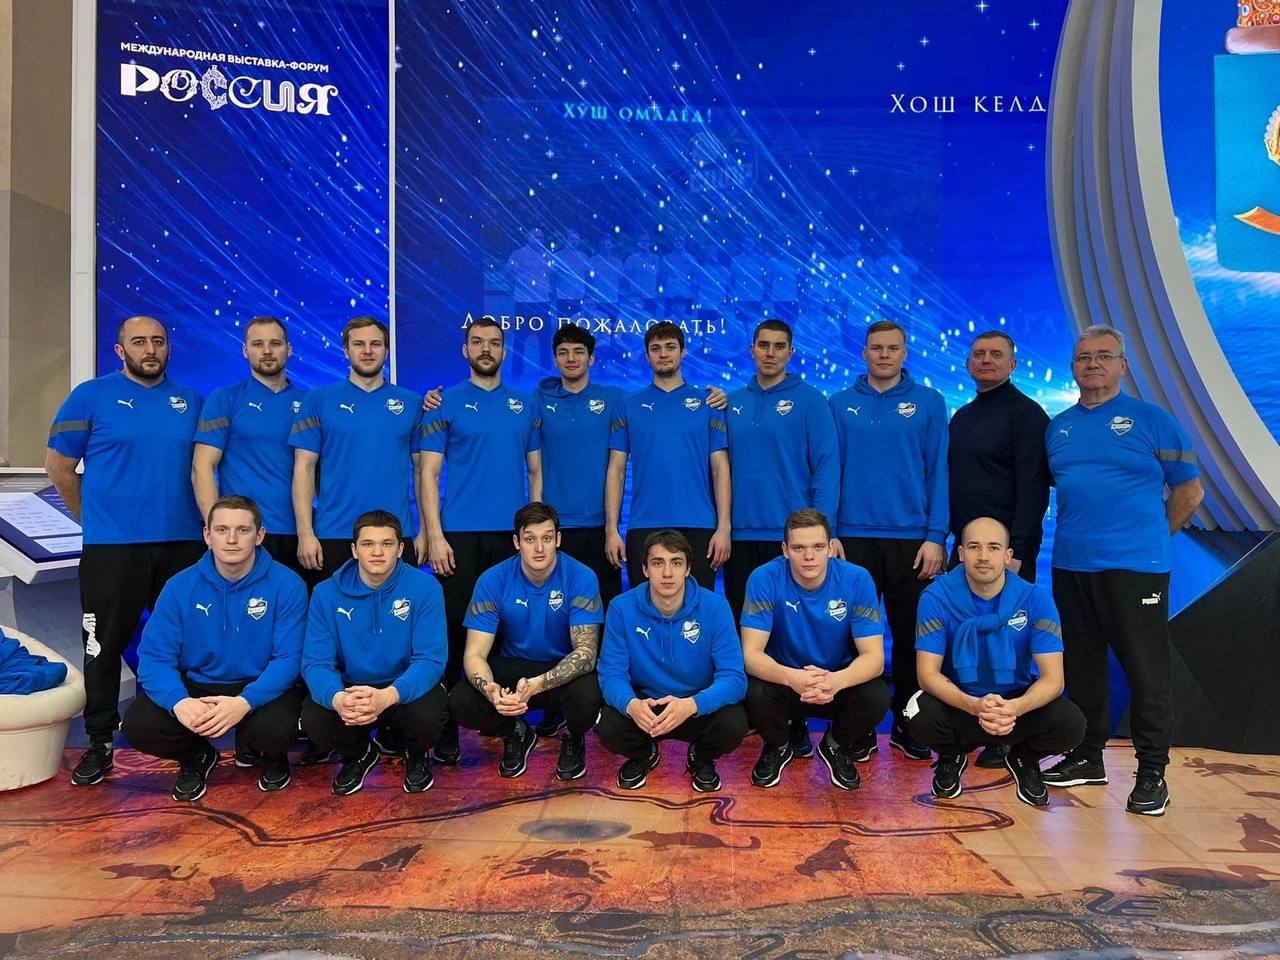 Астраханские ватерполисты провели разминку на Международной выставке «Россия» на ВДНХ